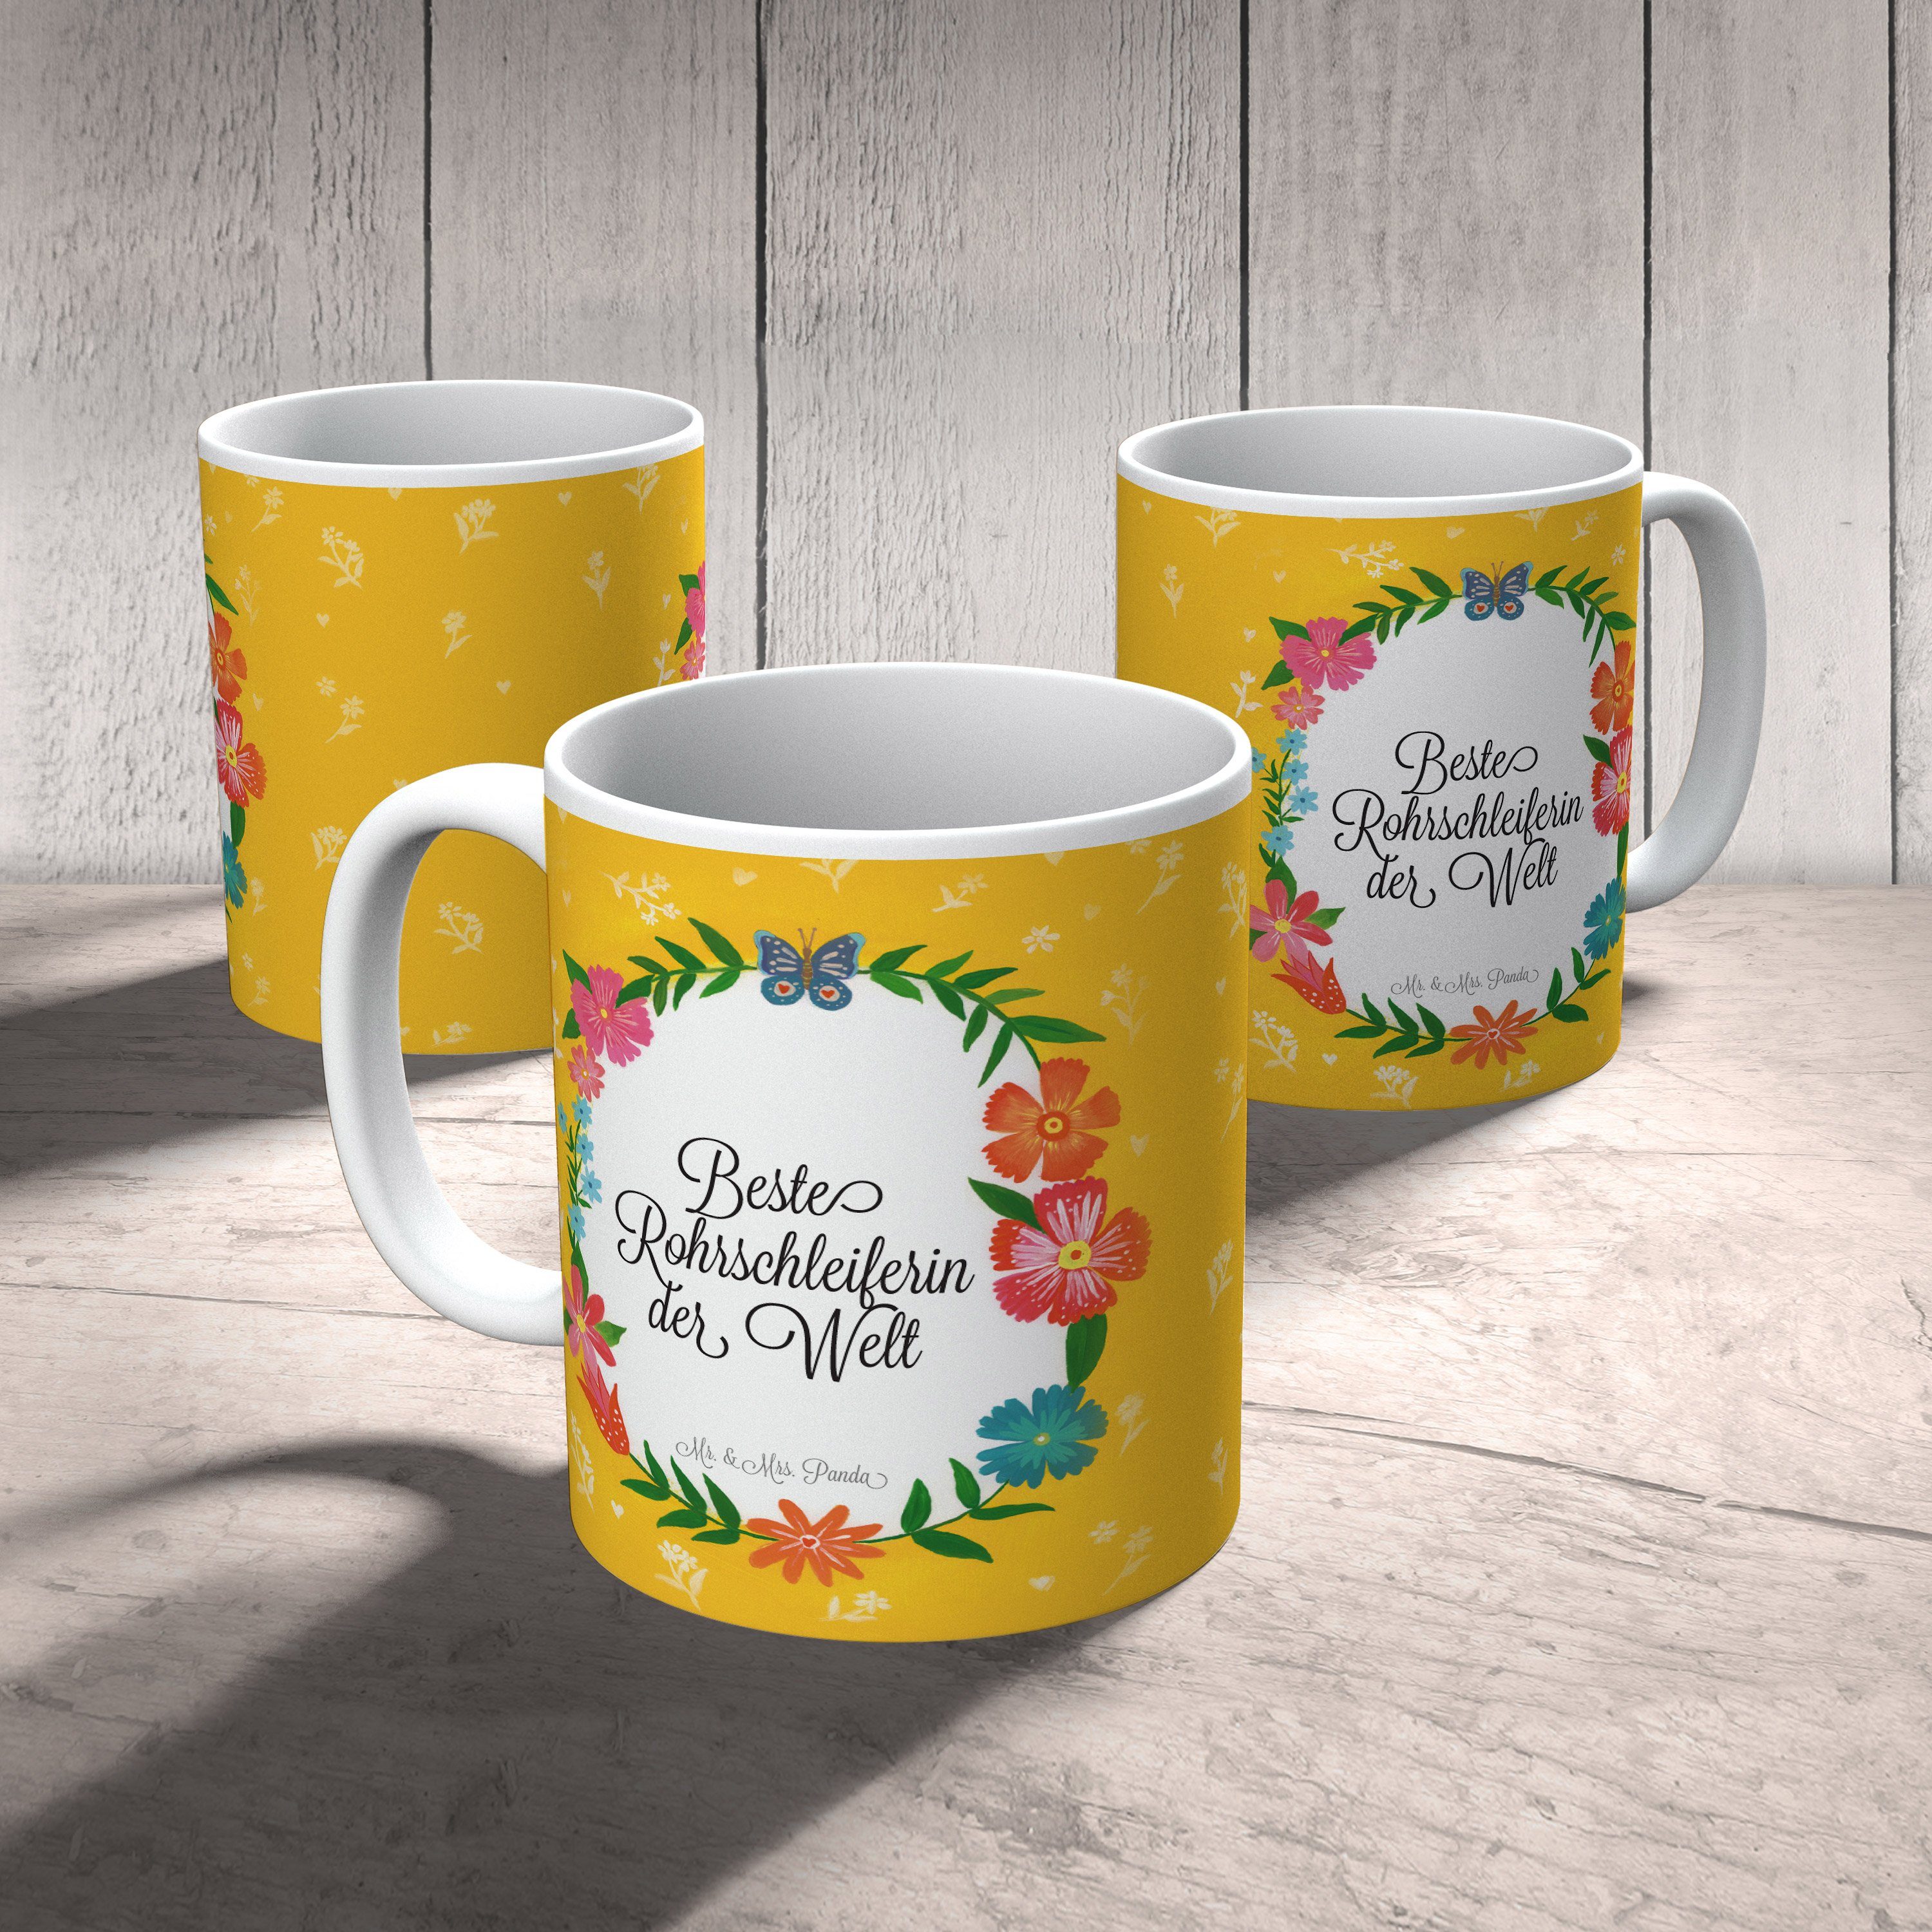 Mr. & Mrs. Panda Tasse Kaffeetasse, Keramik Rohrschleiferin - Tasse, Schenken, Geschenk, Ausbildung